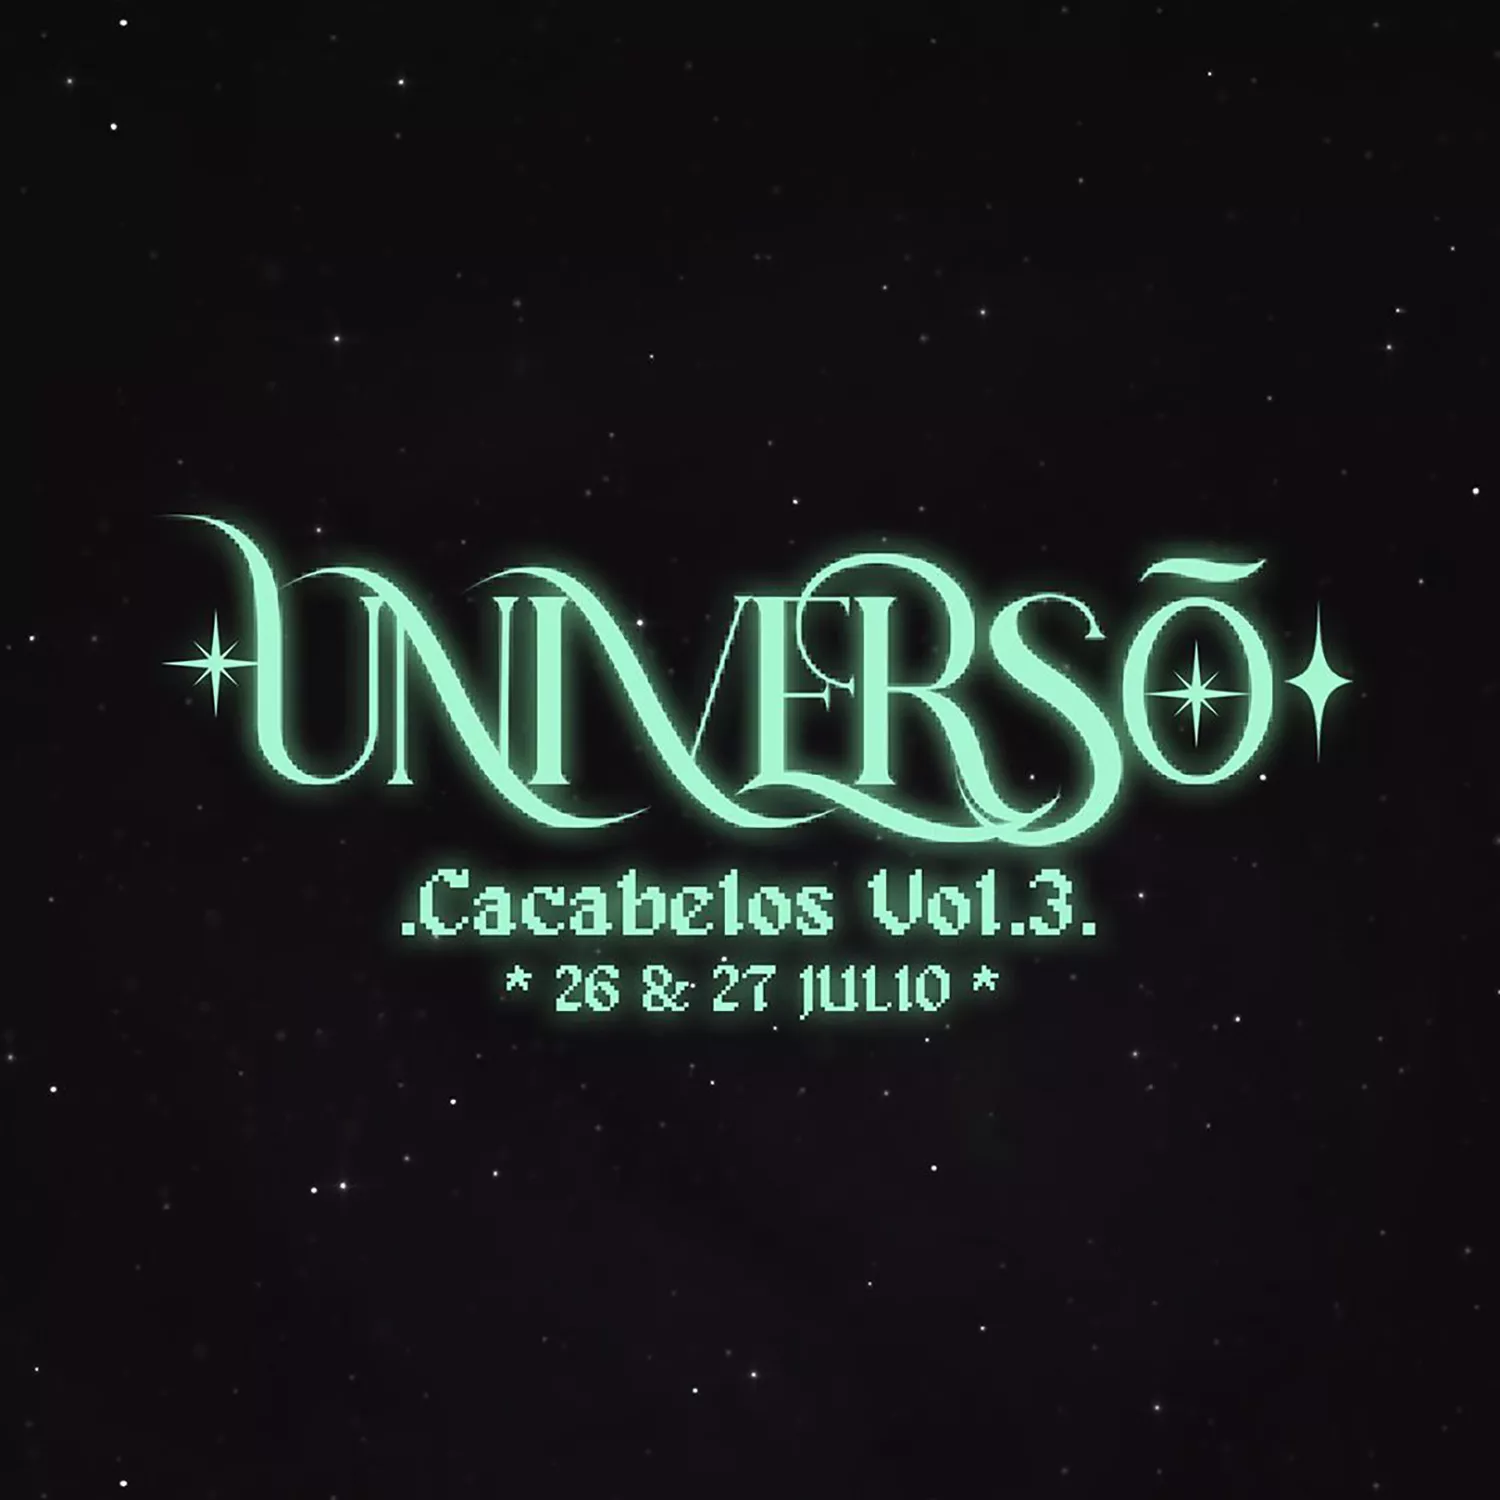 Cacabelos ya tiene fecha para la tercera edición de su festival de música urbana Universo